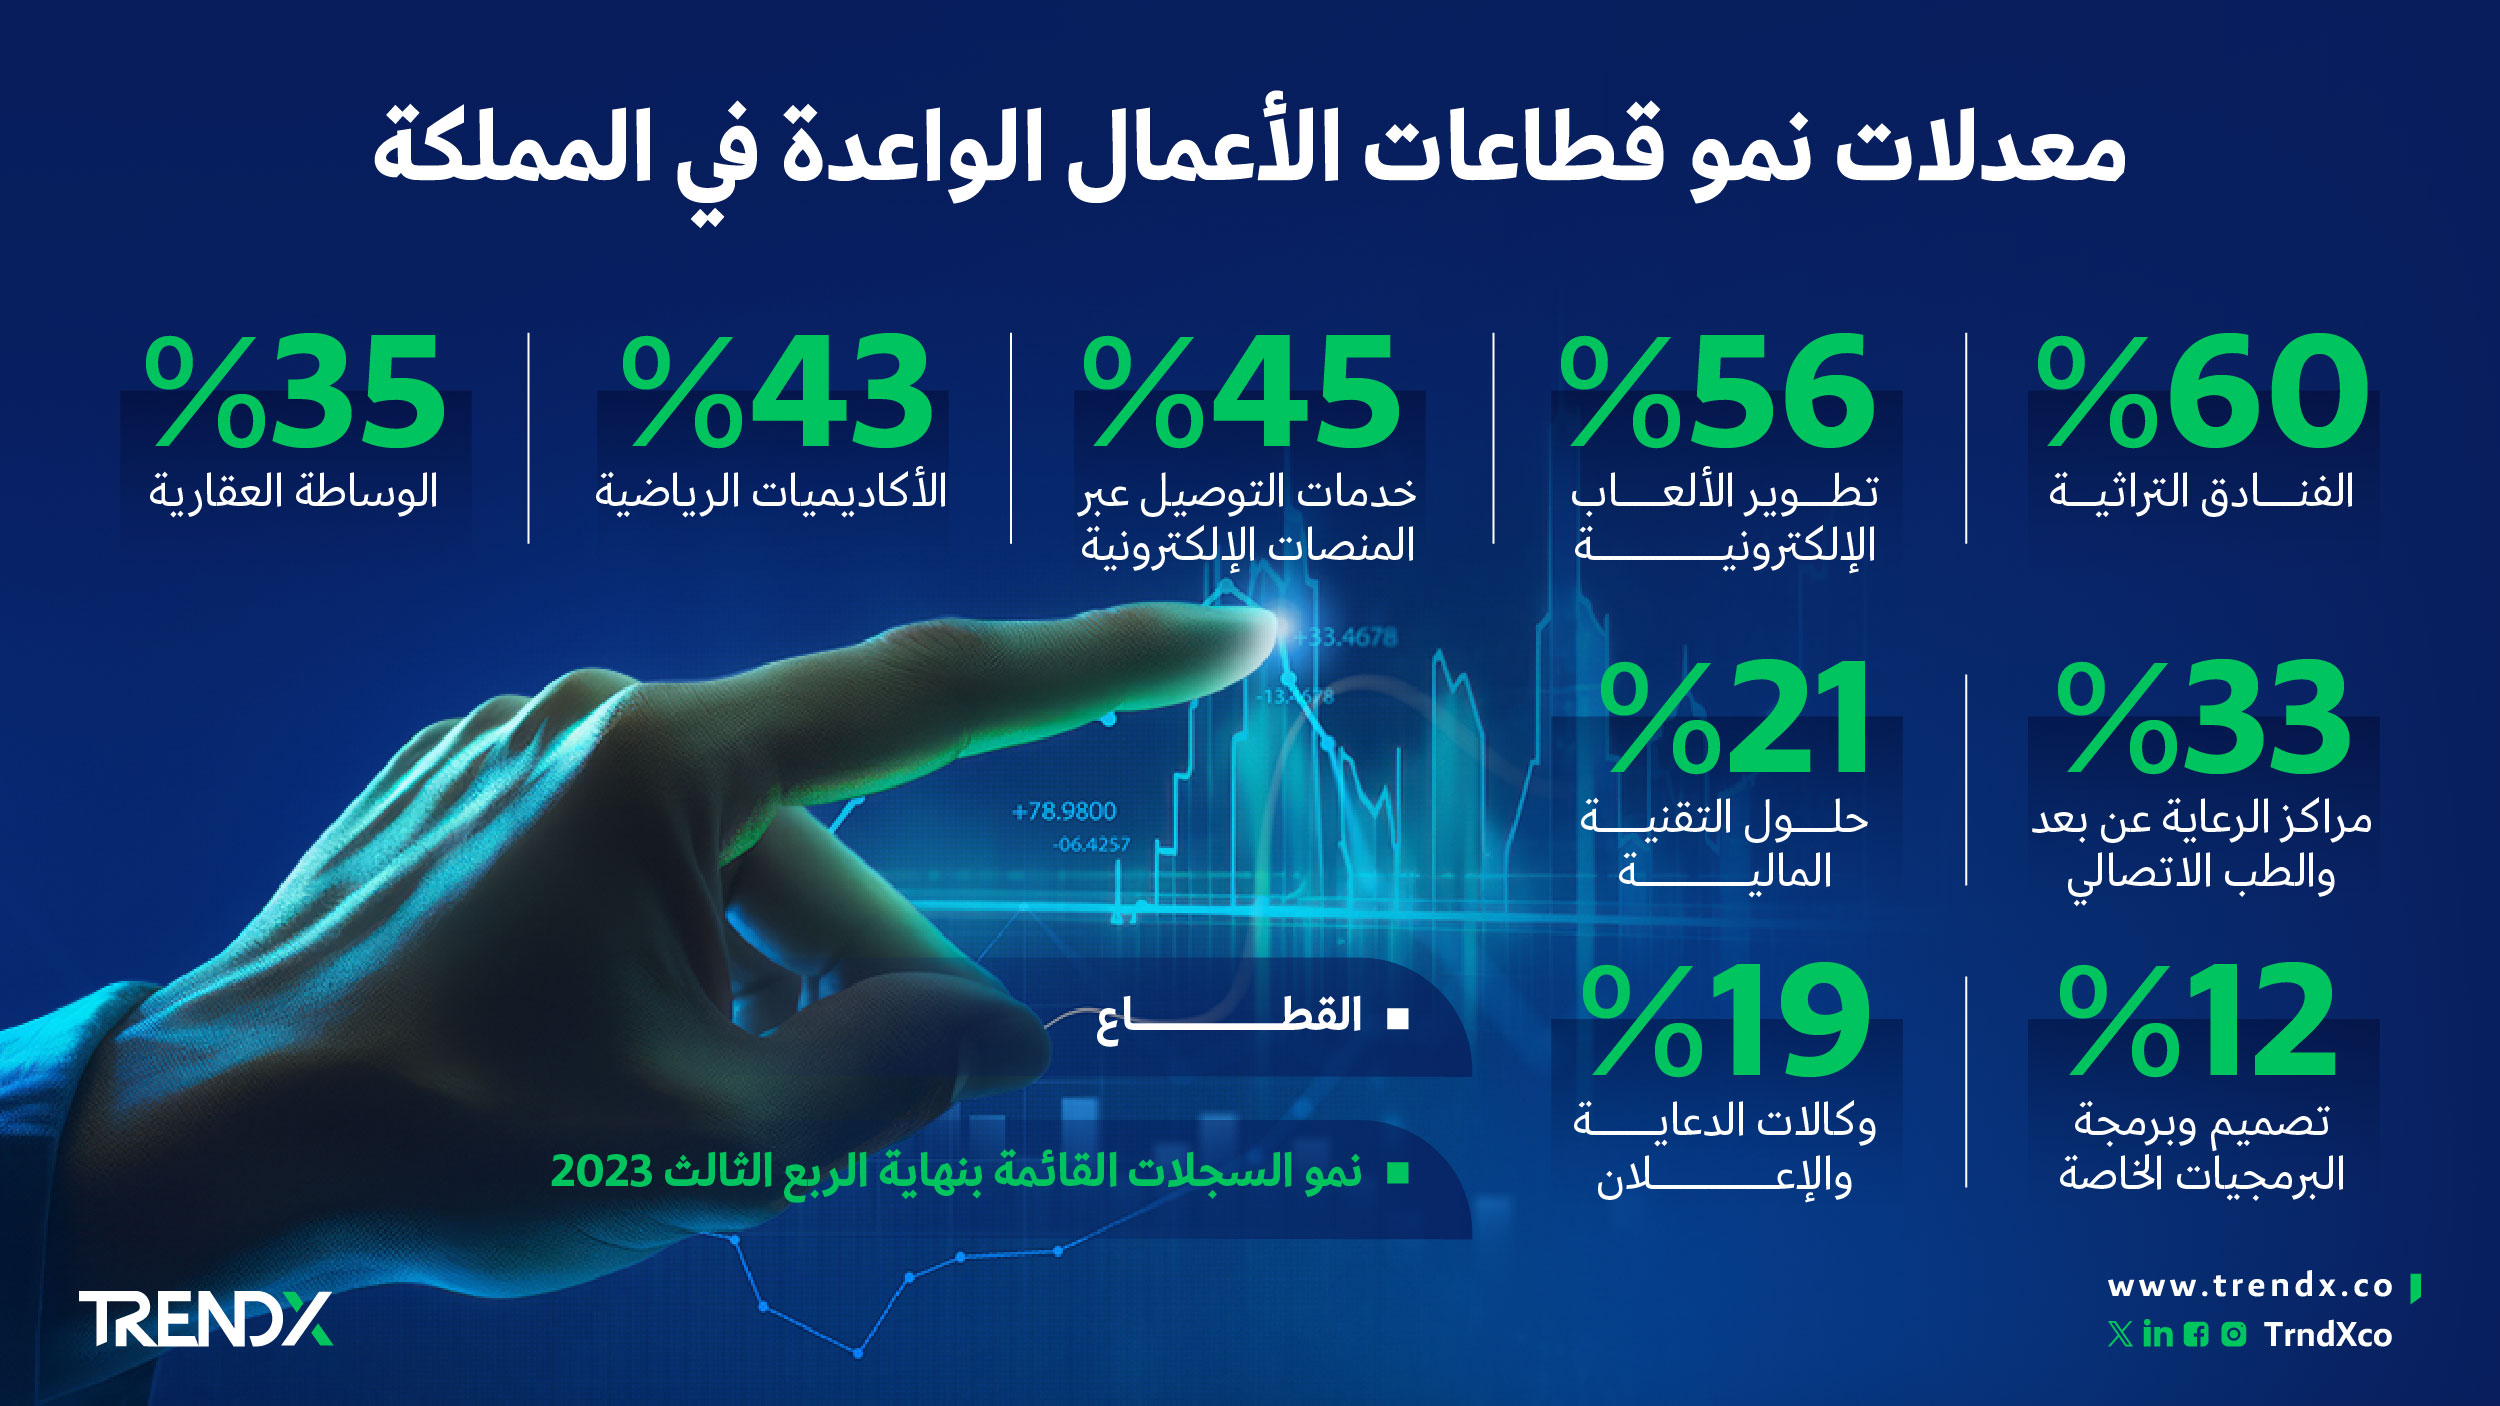 معدلات نمو قطاعات الأعمال الواعدة في المملكة ثروات السعوديين في الفترة من عام 2000 إلى 2022 01